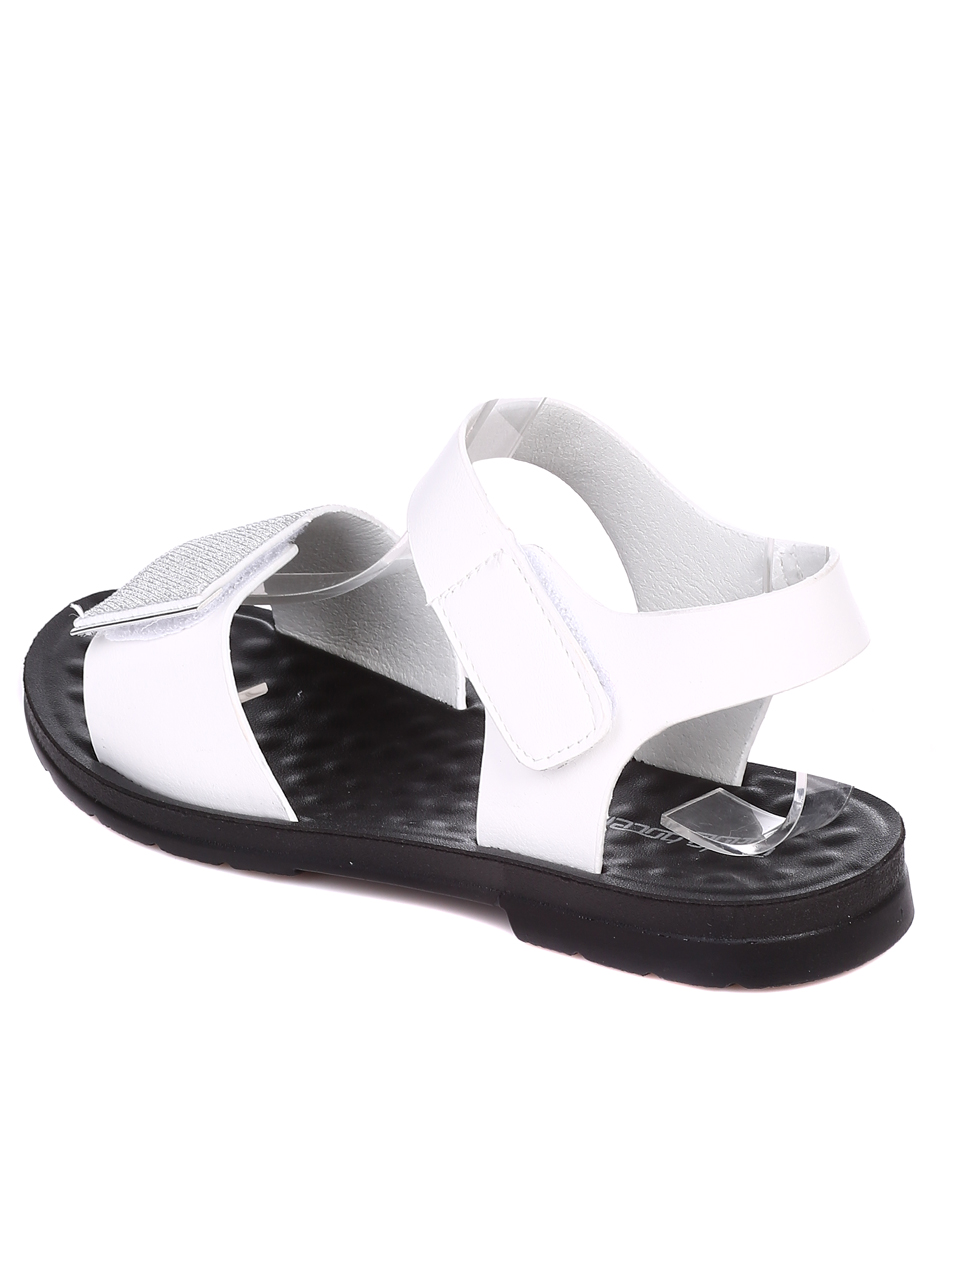 Ежедневни дамски равни сандали в бяло 4D-22201 white